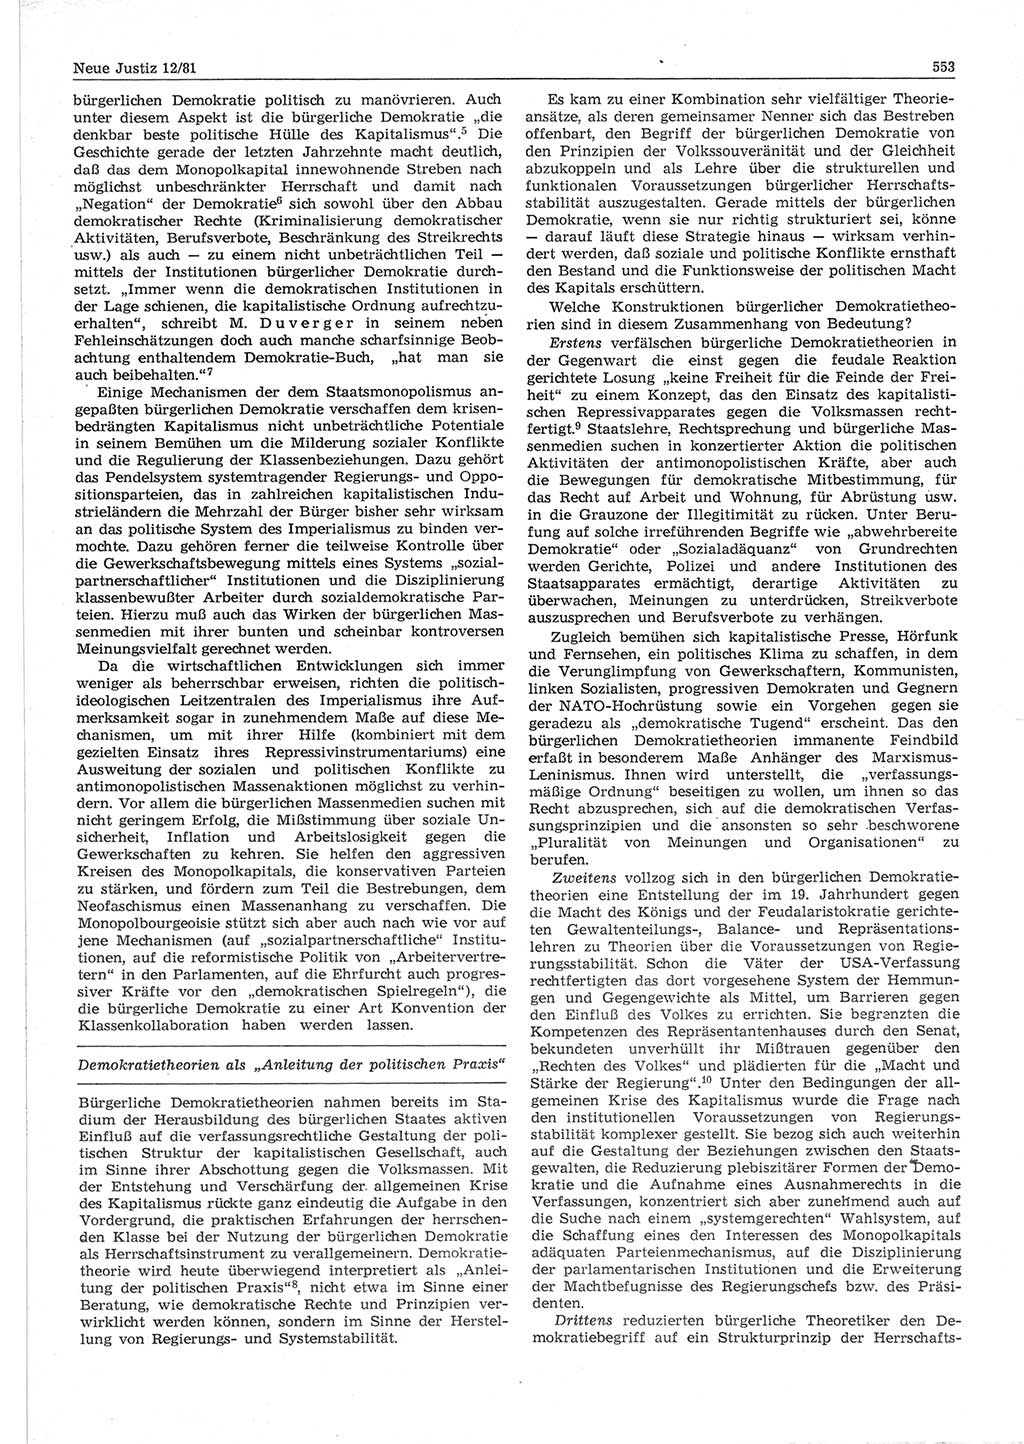 Neue Justiz (NJ), Zeitschrift für sozialistisches Recht und Gesetzlichkeit [Deutsche Demokratische Republik (DDR)], 35. Jahrgang 1981, Seite 553 (NJ DDR 1981, S. 553)